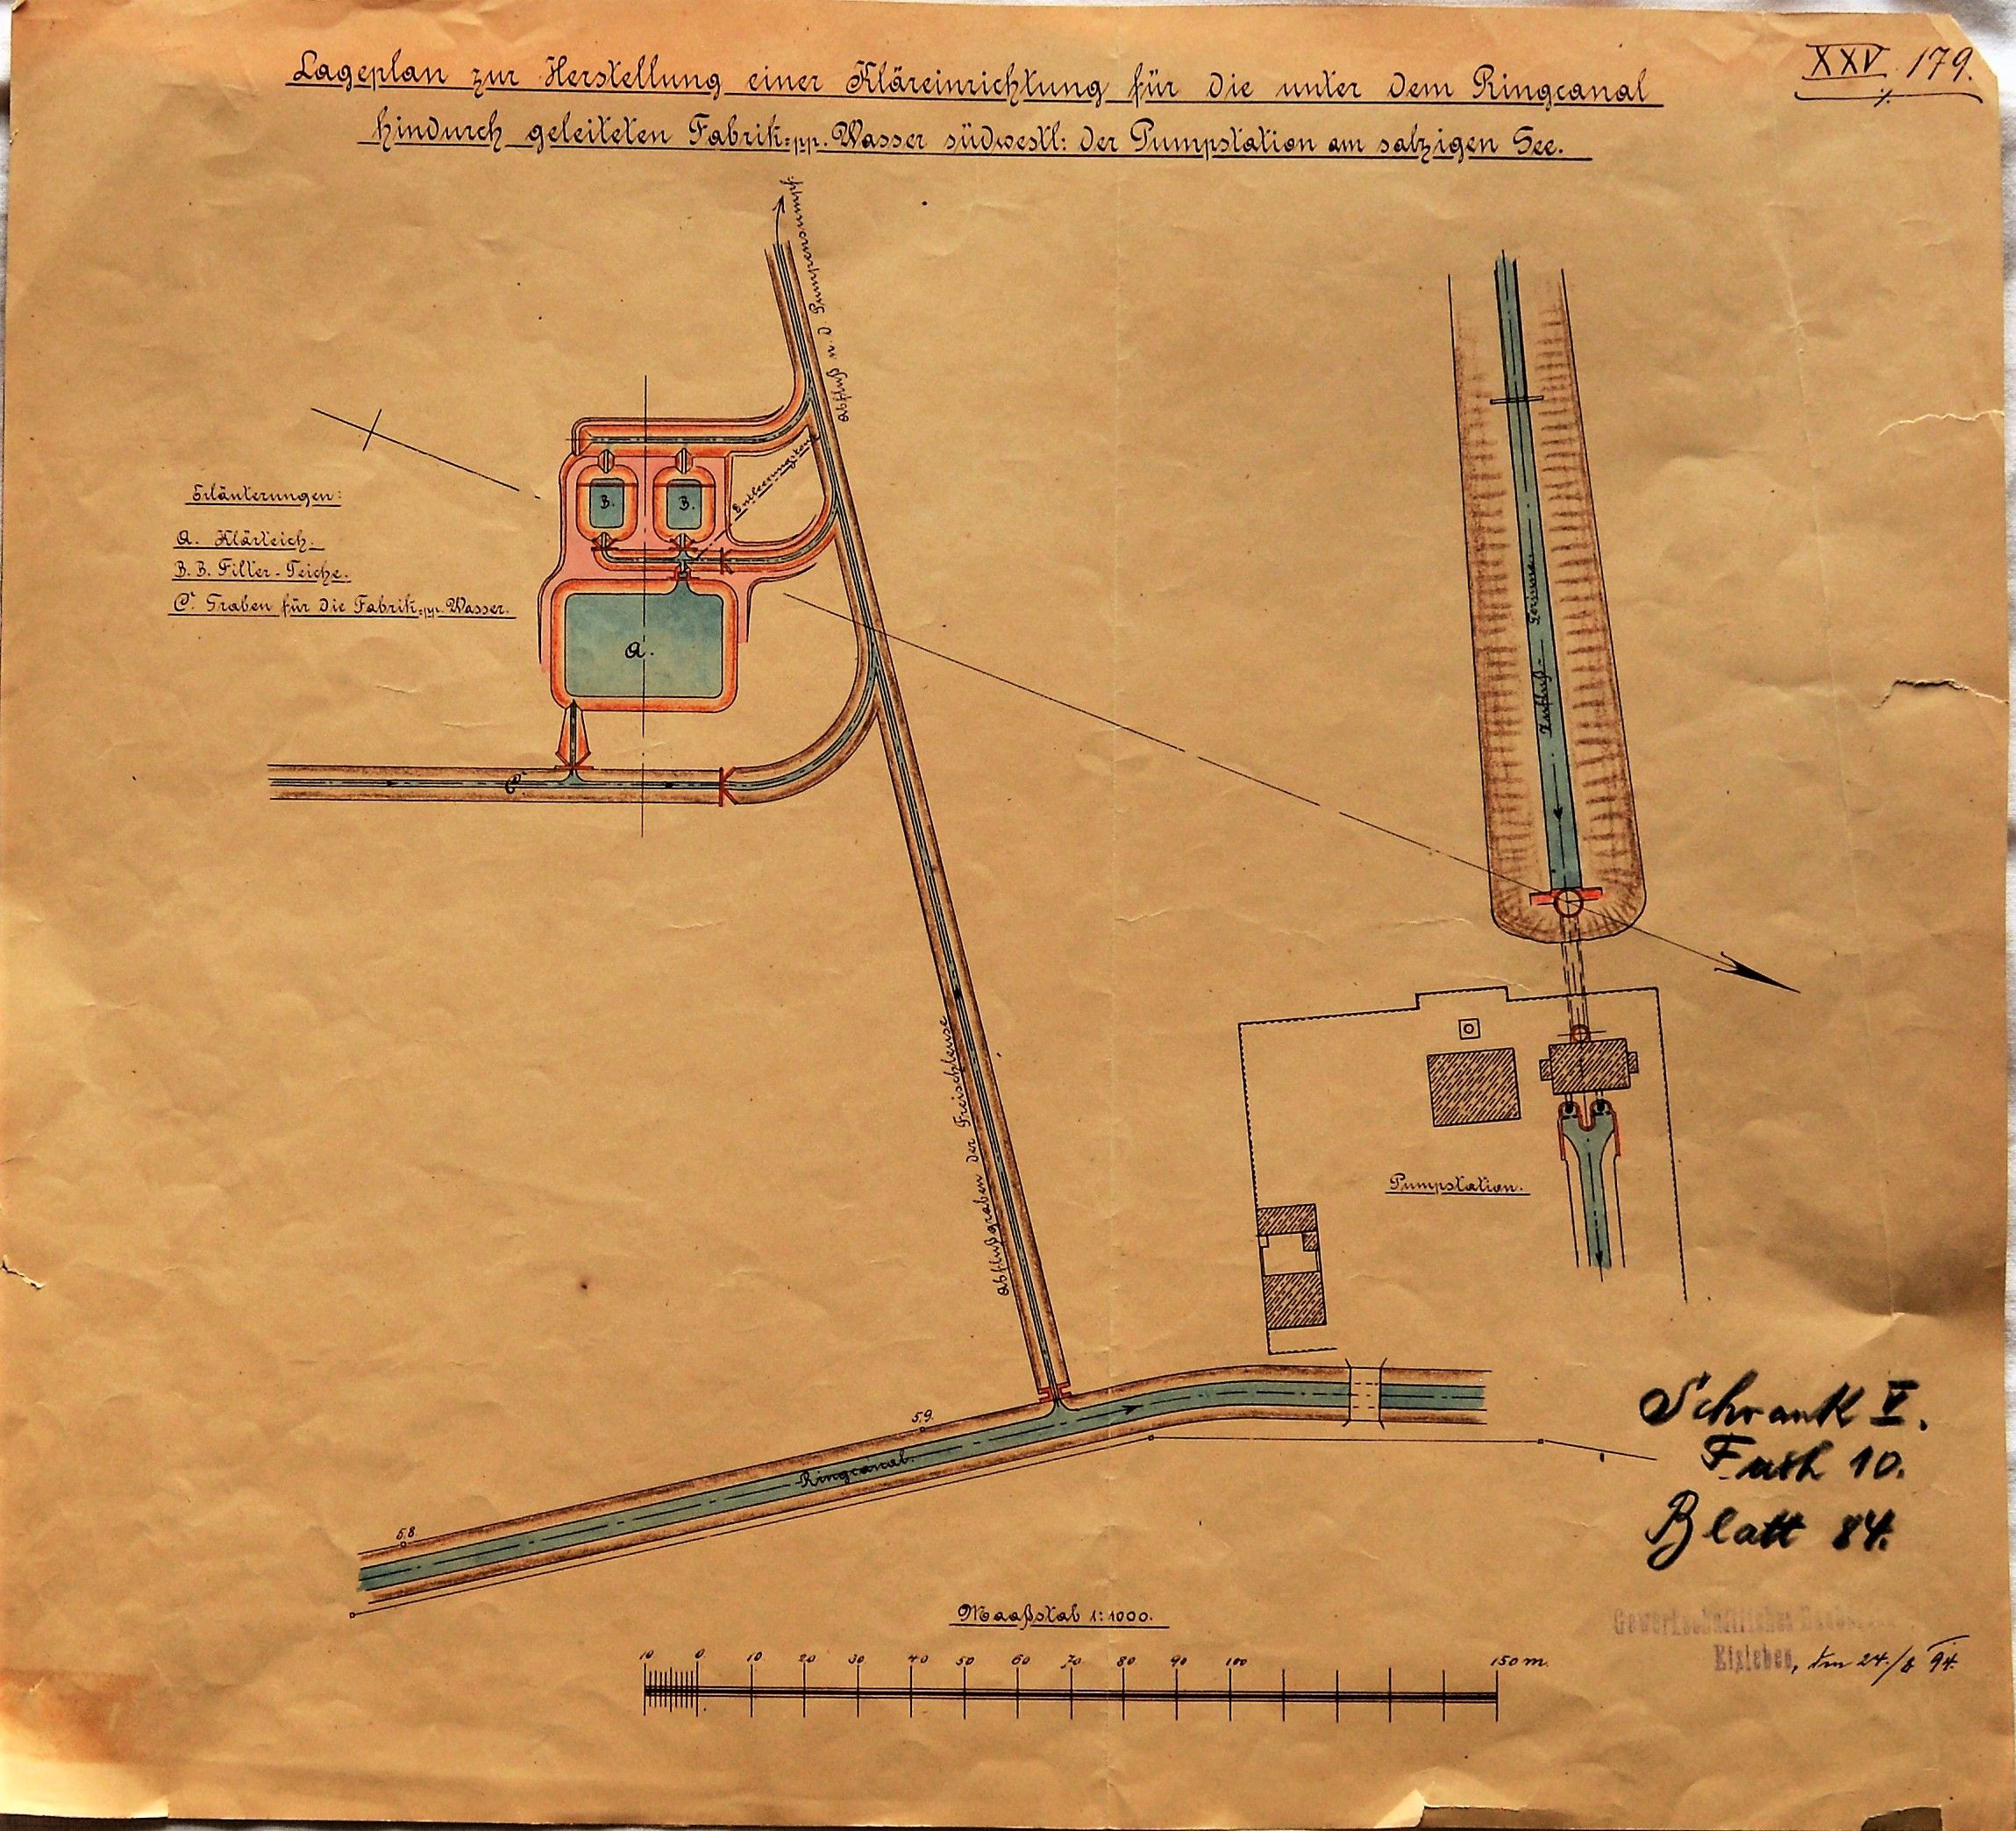 Lageplan zur Herstellung einer Kläreinrichtung für die unter dem Ringcanal hindurch geleiteten Fabrik:pp.Wasser südwestl: der Pumpstation am salzigen See. (Mansfeld-Museum im Humboldt-Schloss CC BY-NC-SA)